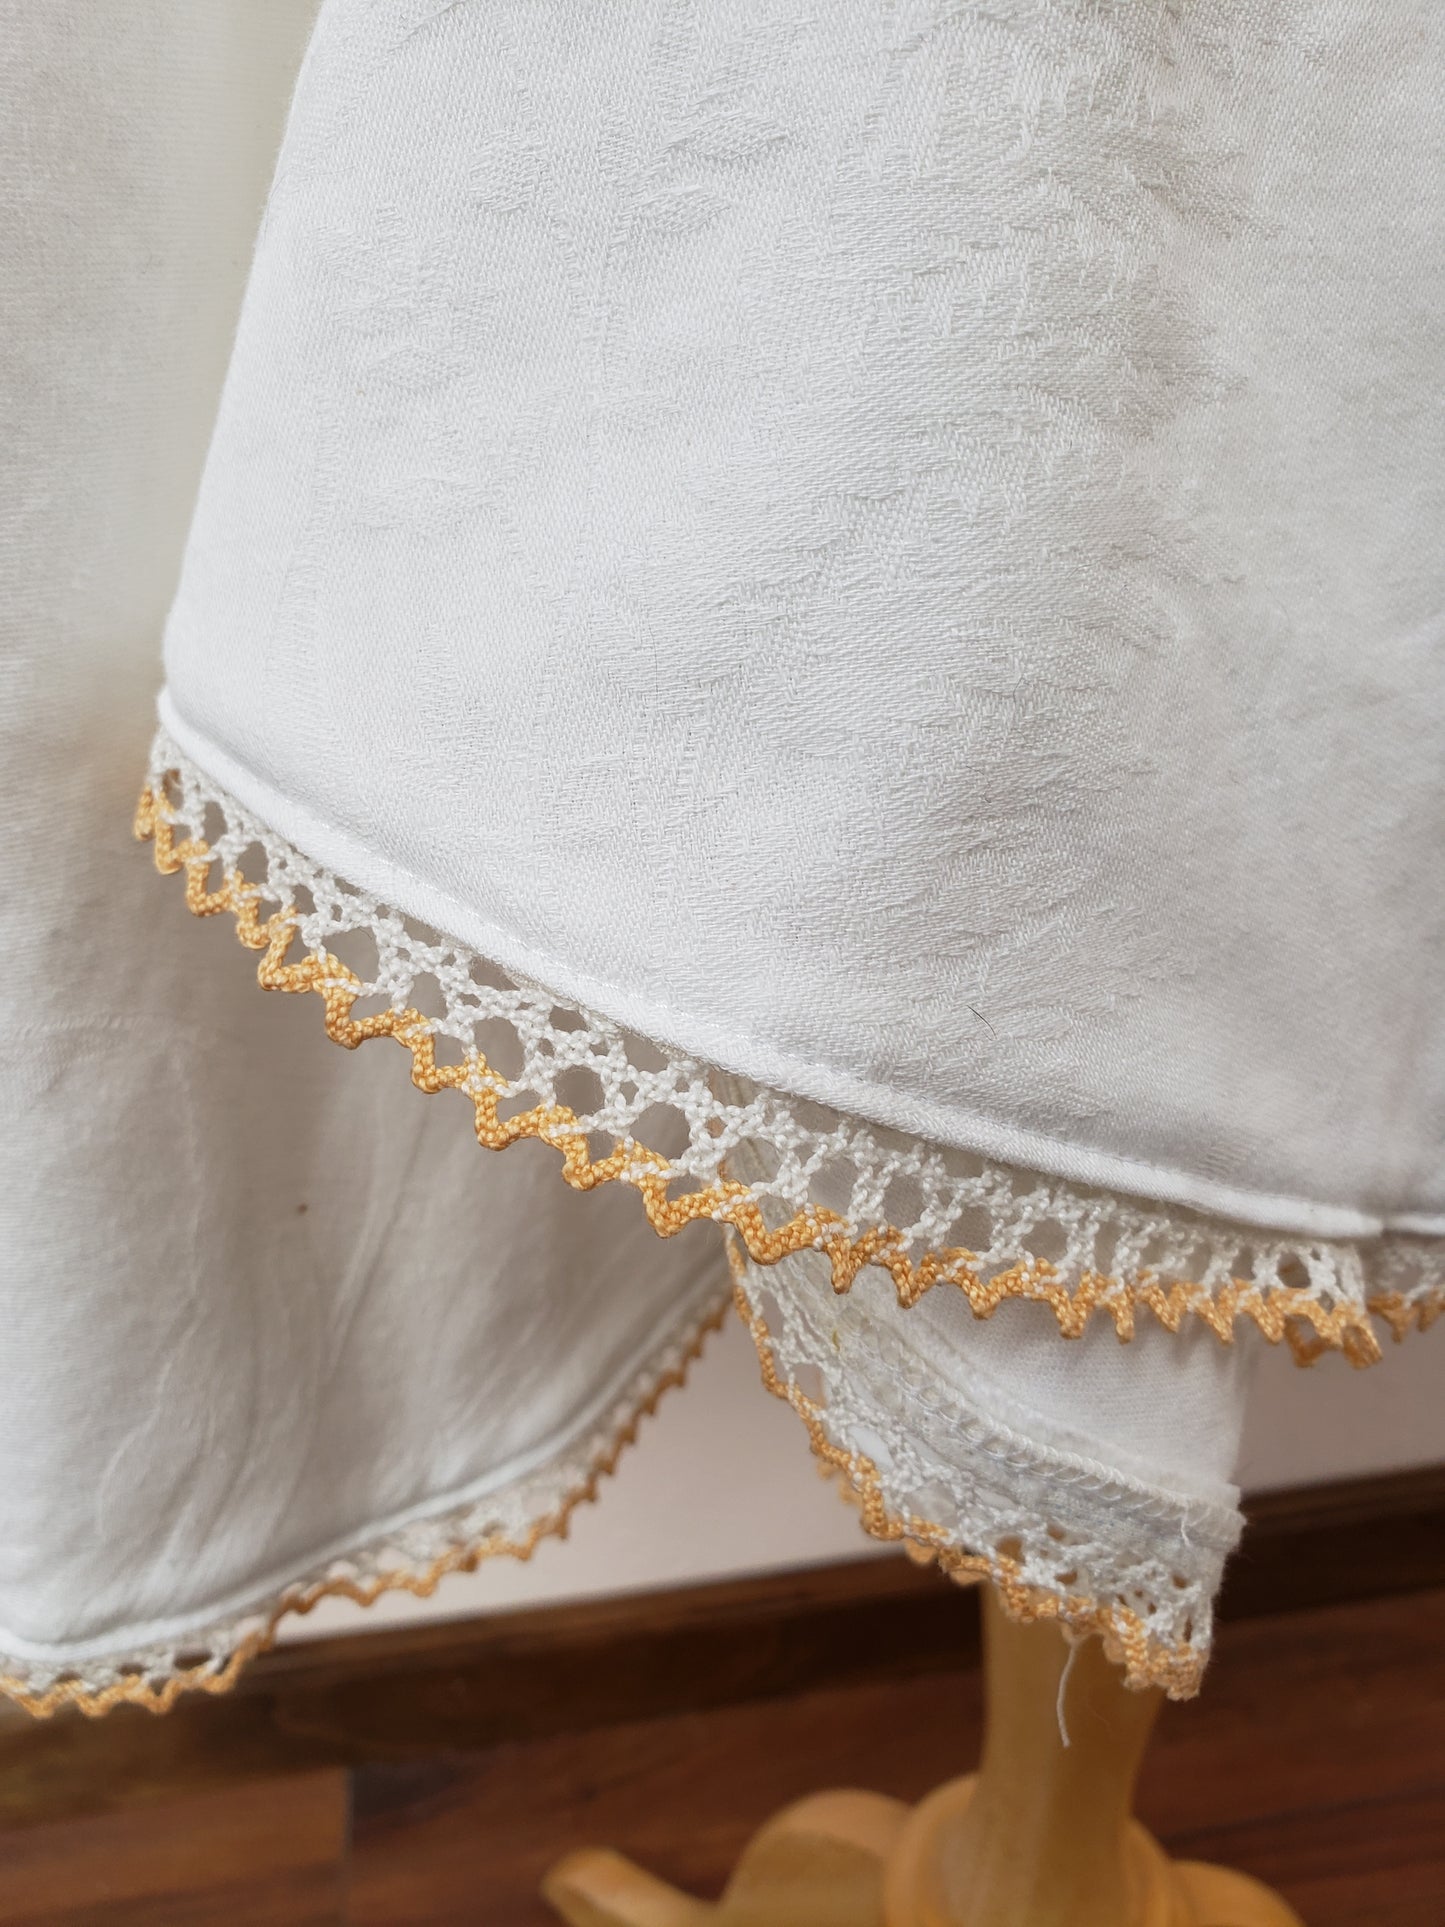 Handmade embroidered pocket skirt